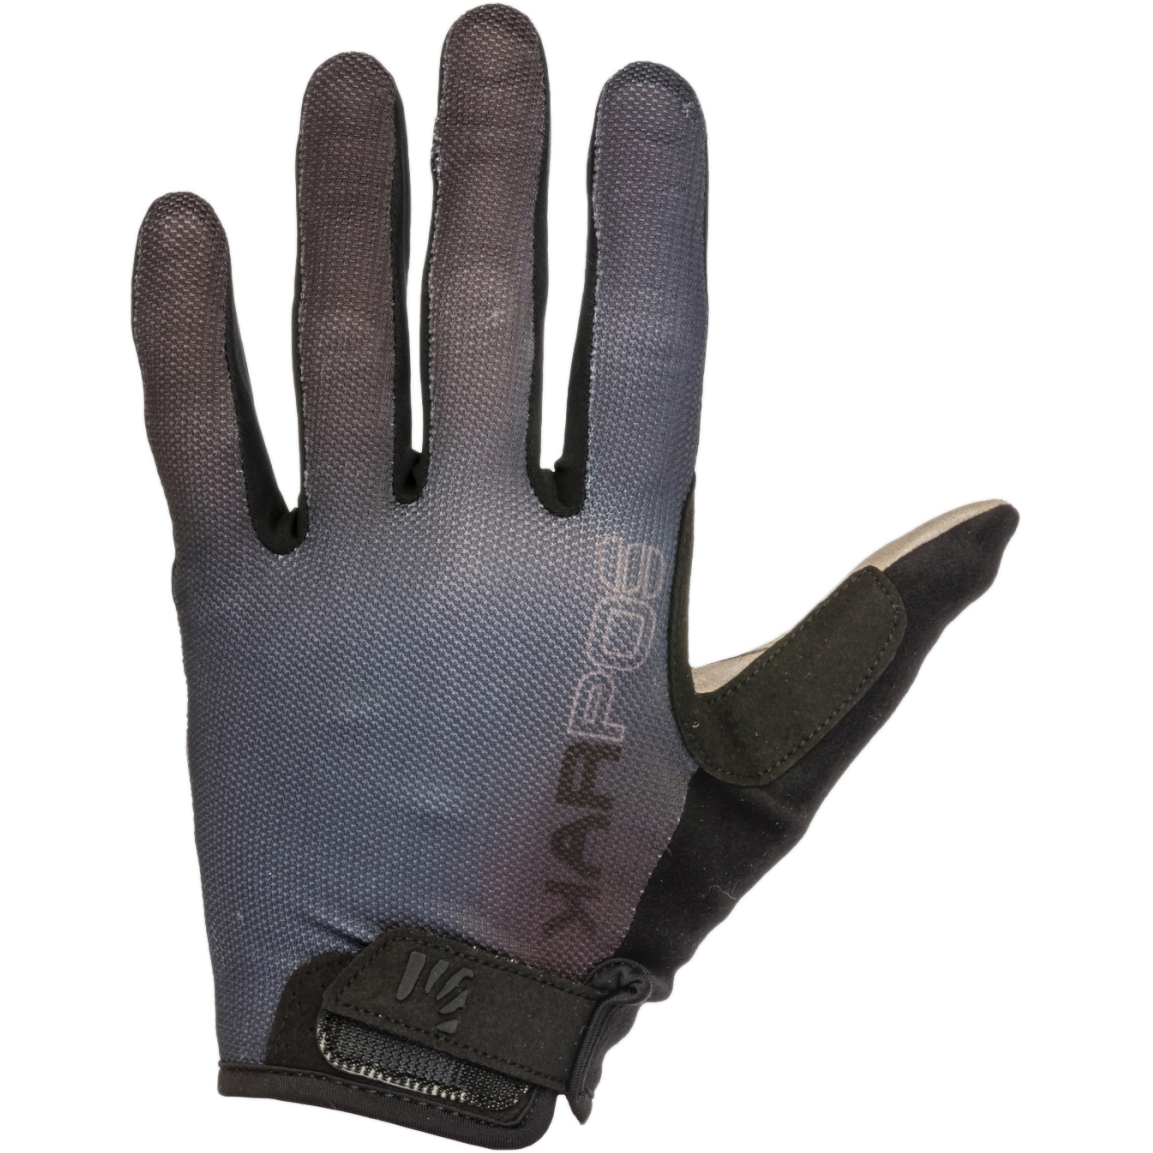 Produktbild von Karpos Federia MTB-Handschuhe - schwarz